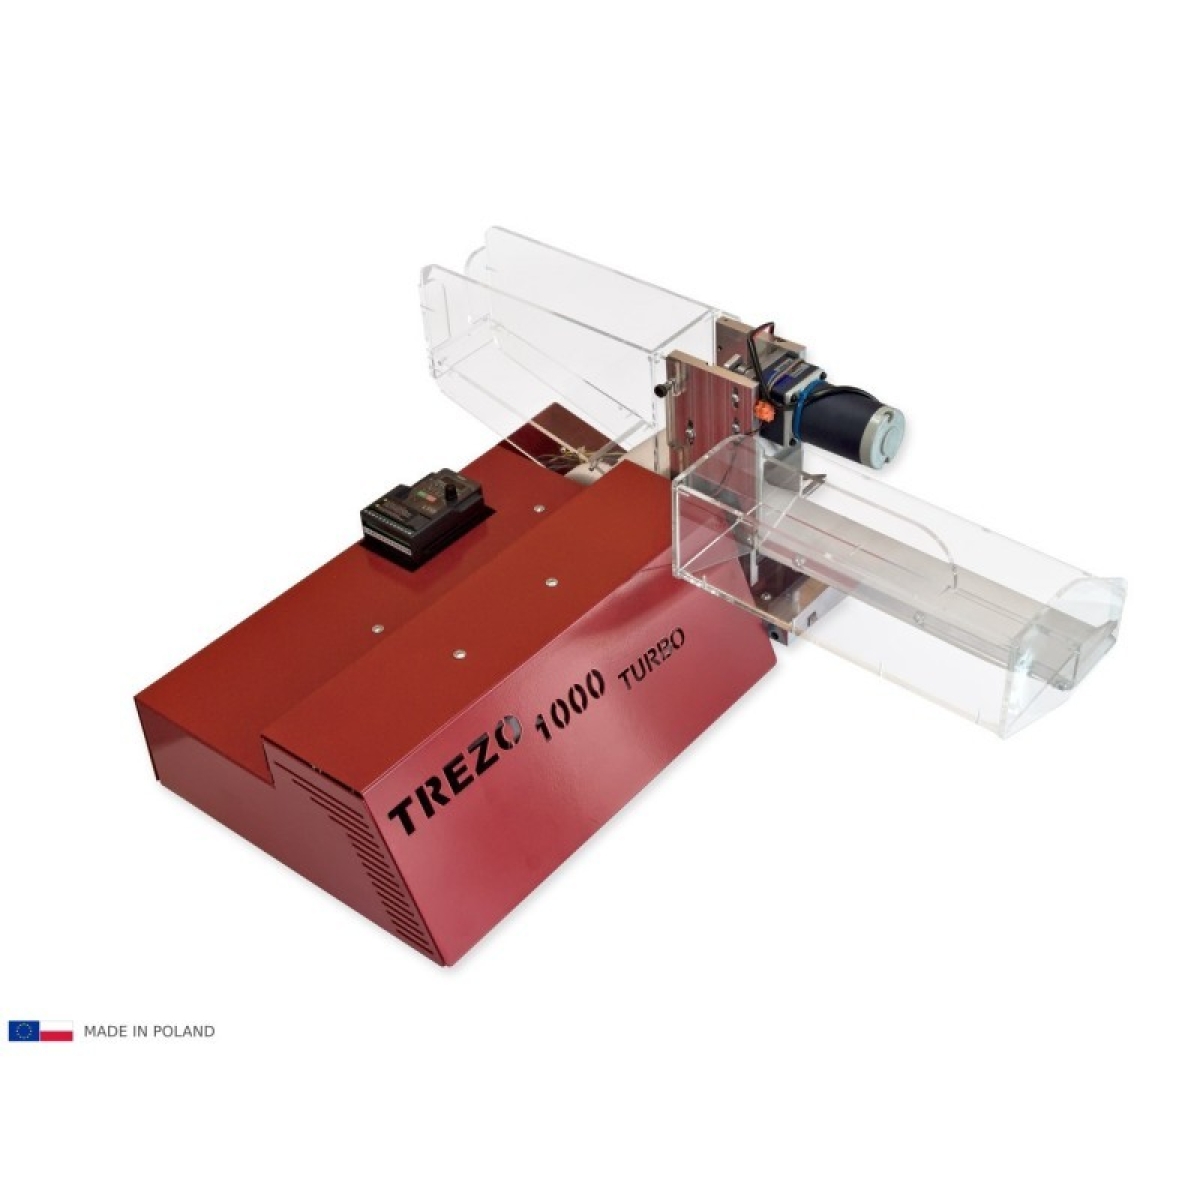 Electric cigarette injector-machine TREZO 1000 TURBO